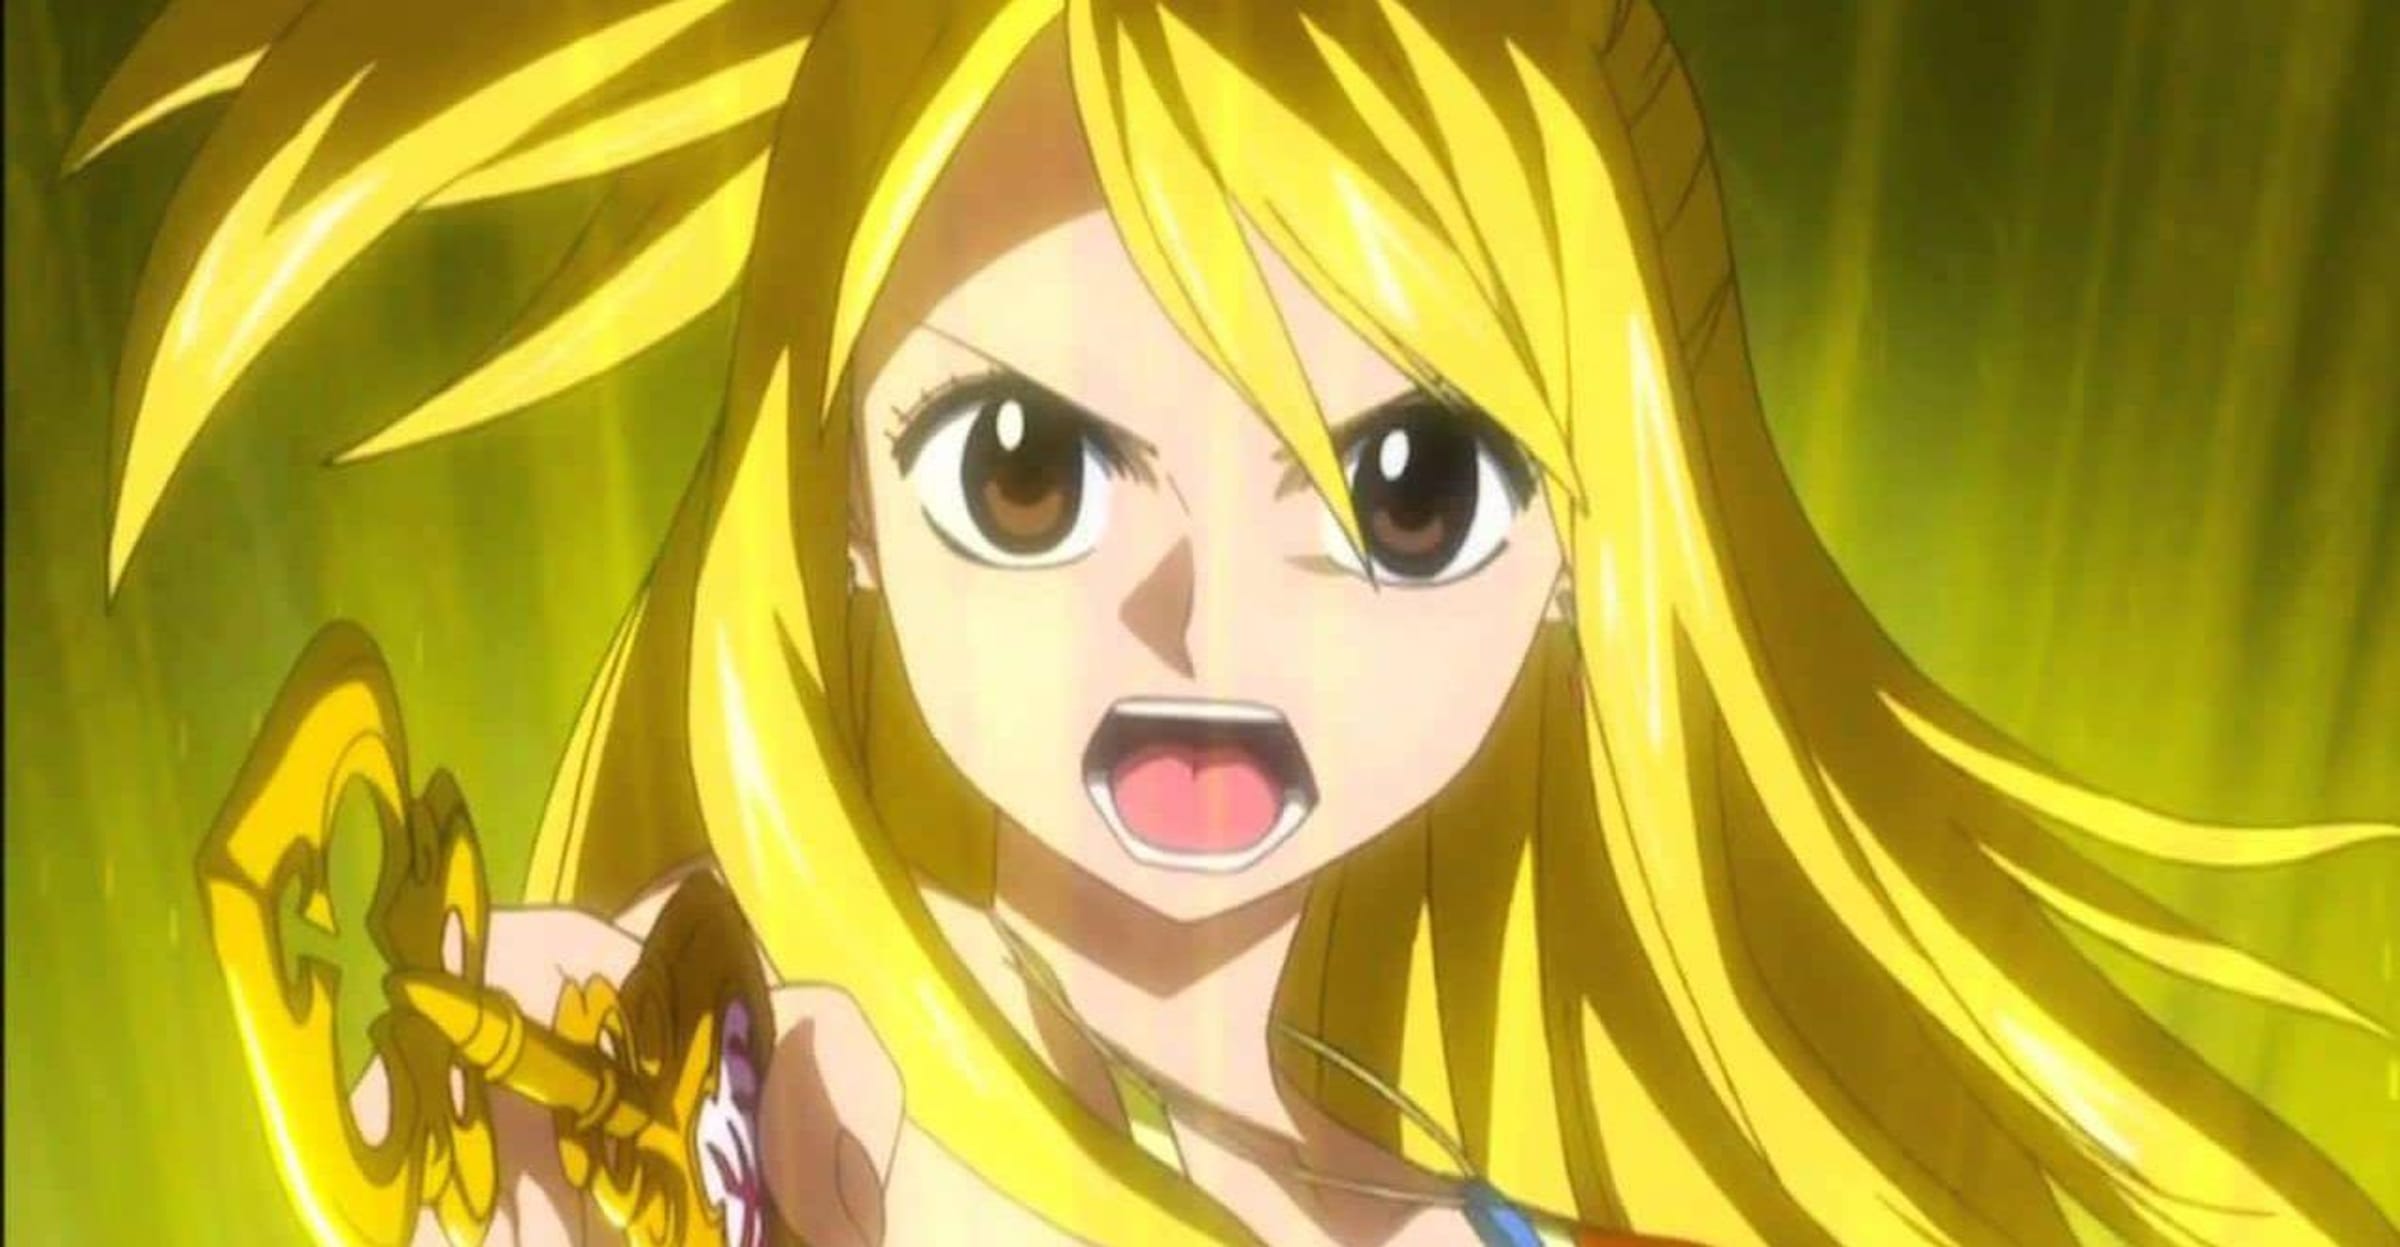 Anime - Fairy tail Lucy Hearthfilia